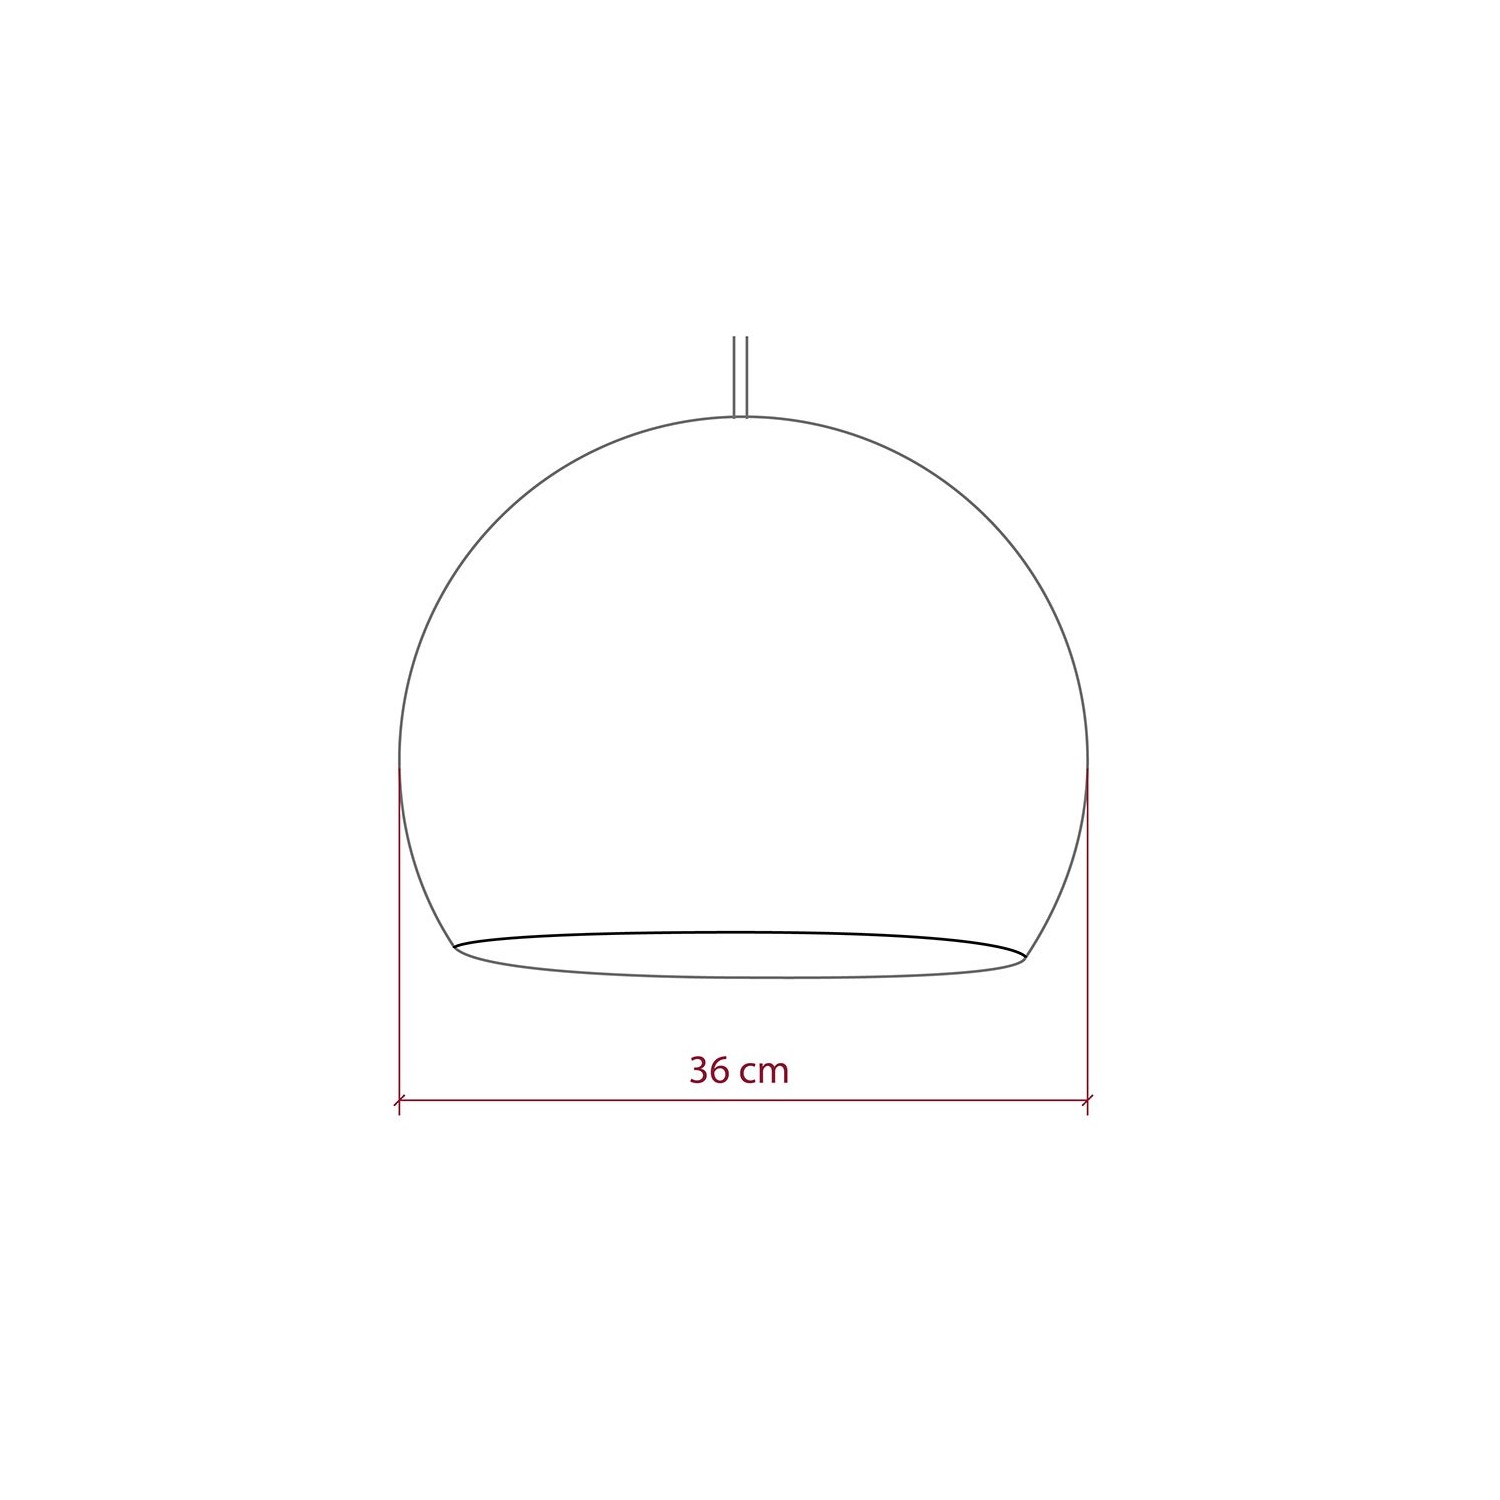 Pantalla Cúpula M de hilo de poliéster, diámetro 35cm - 100% hecho a mano